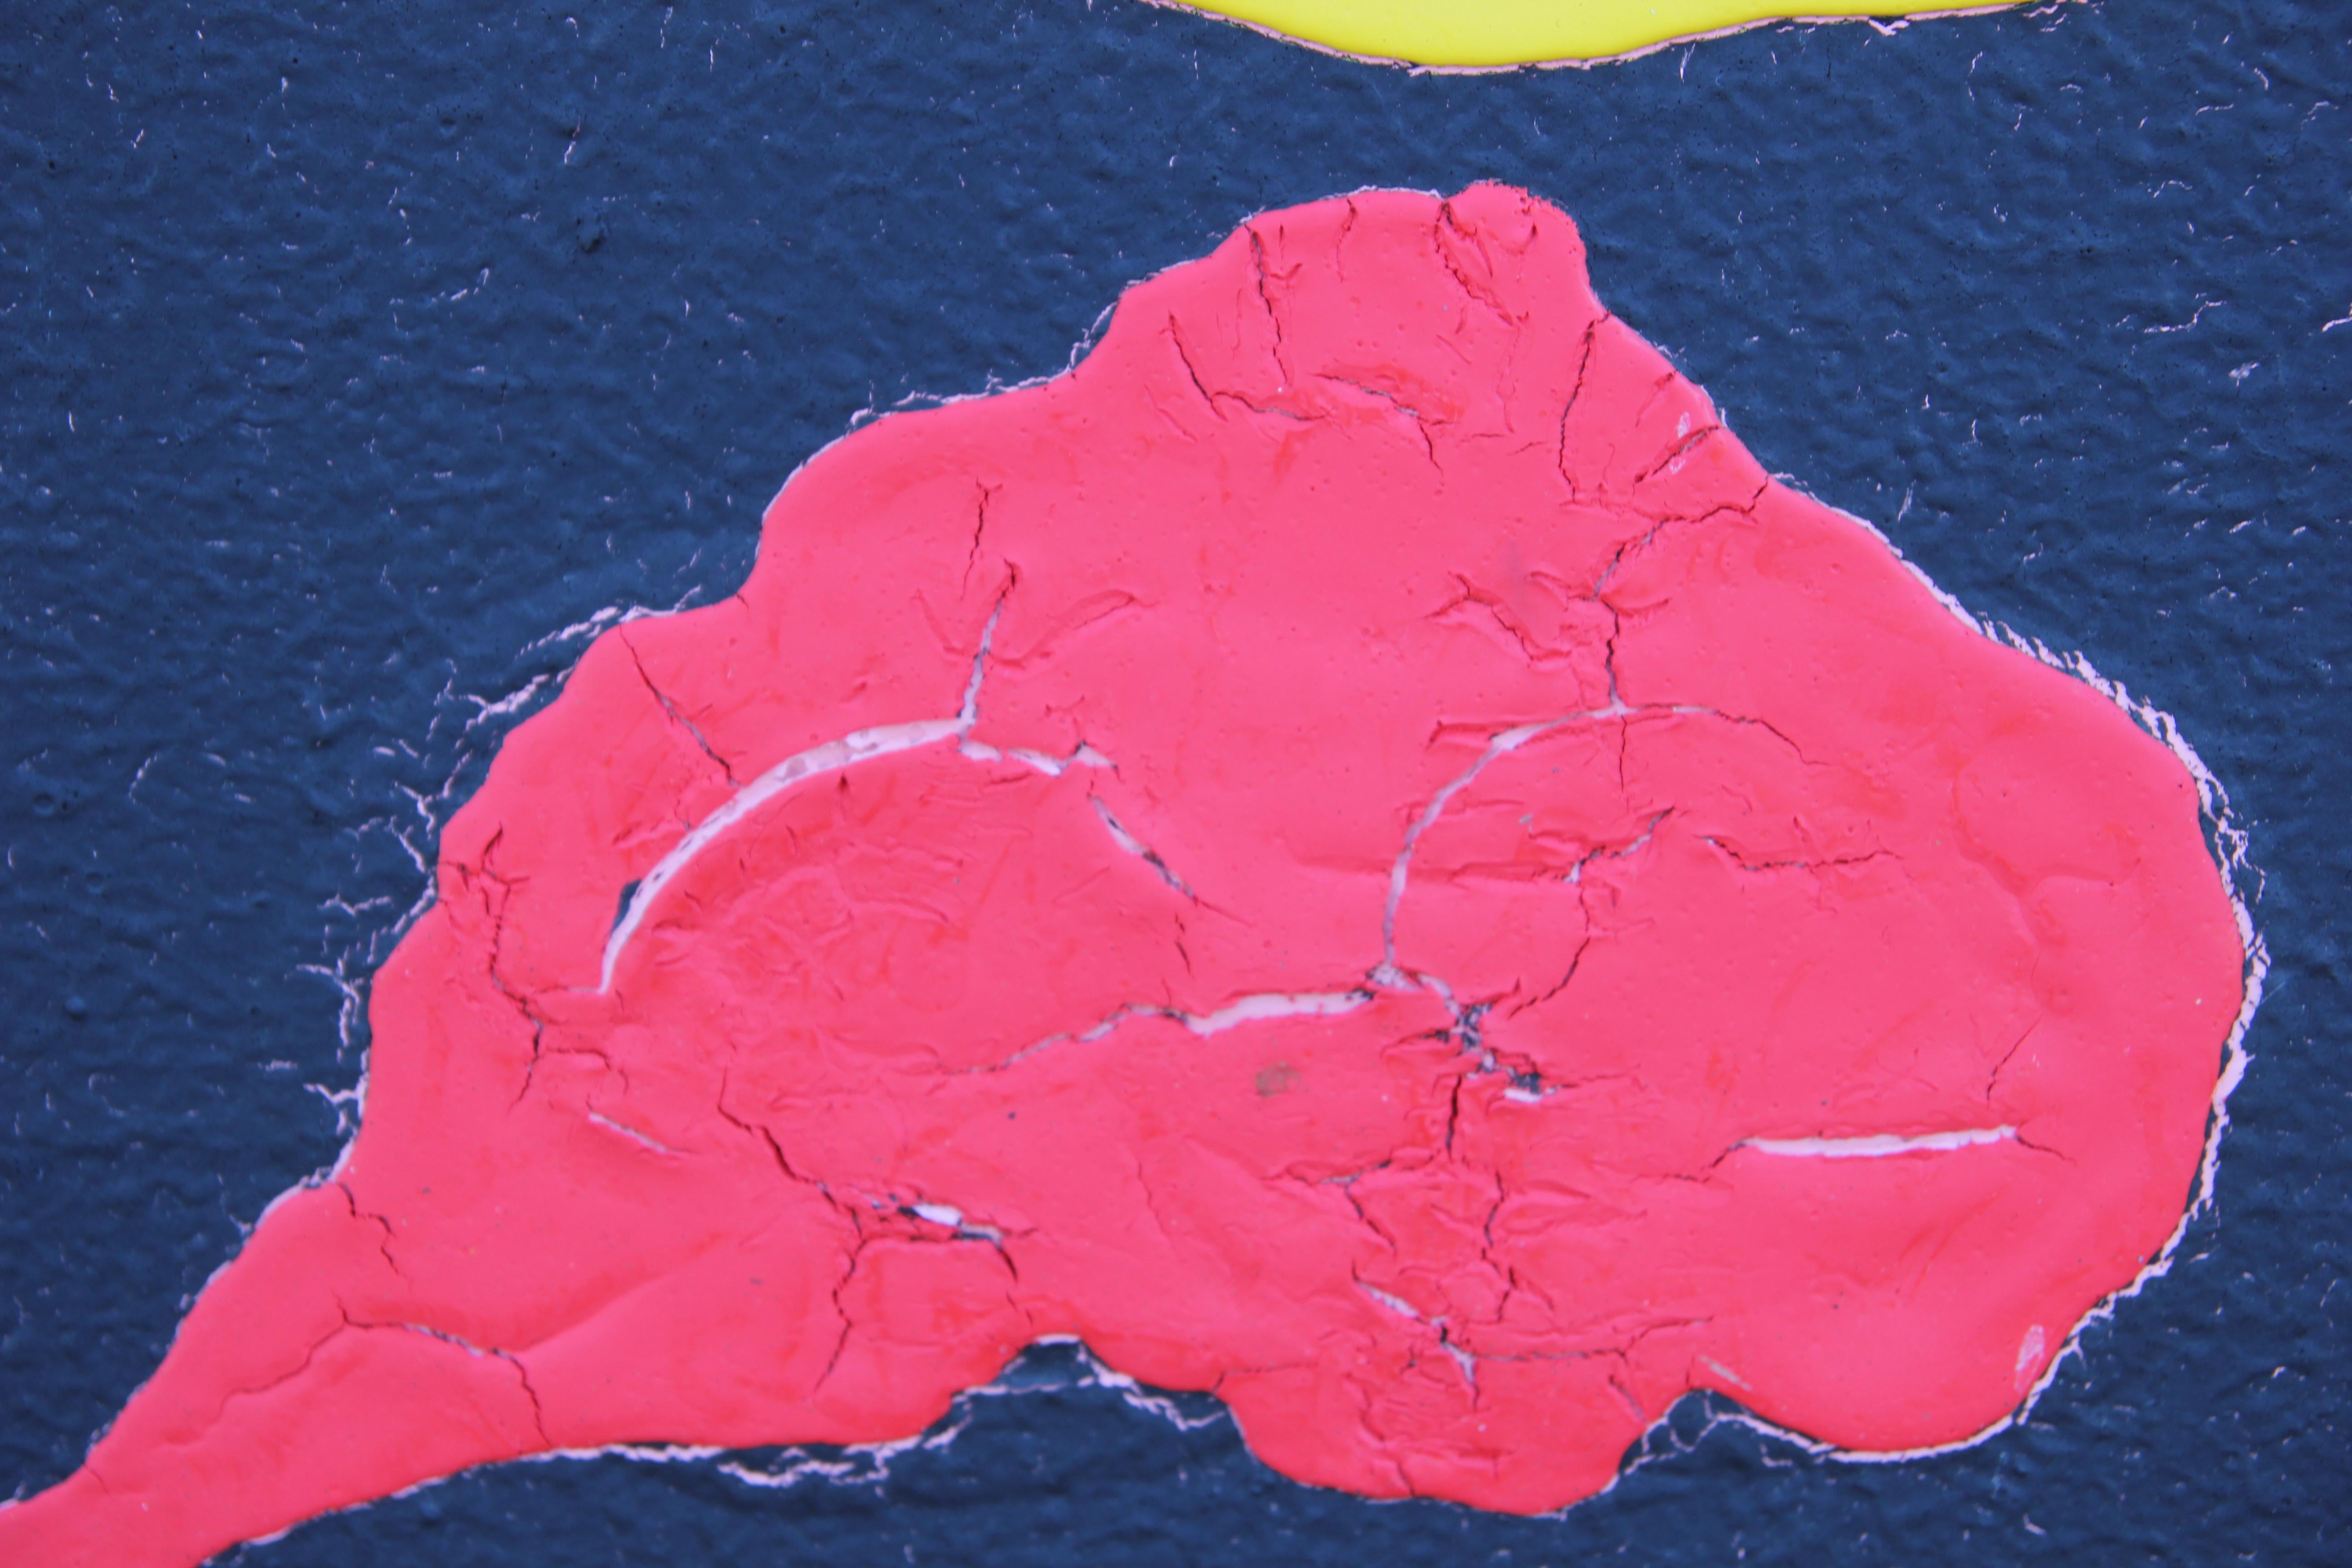 Mixed Media primäre tonale Malerei mit zwei auf der Oberfläche befestigten Metallautos. Das Werk ist in gelben und roten Farbtönen gehalten. Das Gemälde ist in der unteren Ecke vom Künstler signiert. Die Leinwand ist in einen goldenen Rahmen